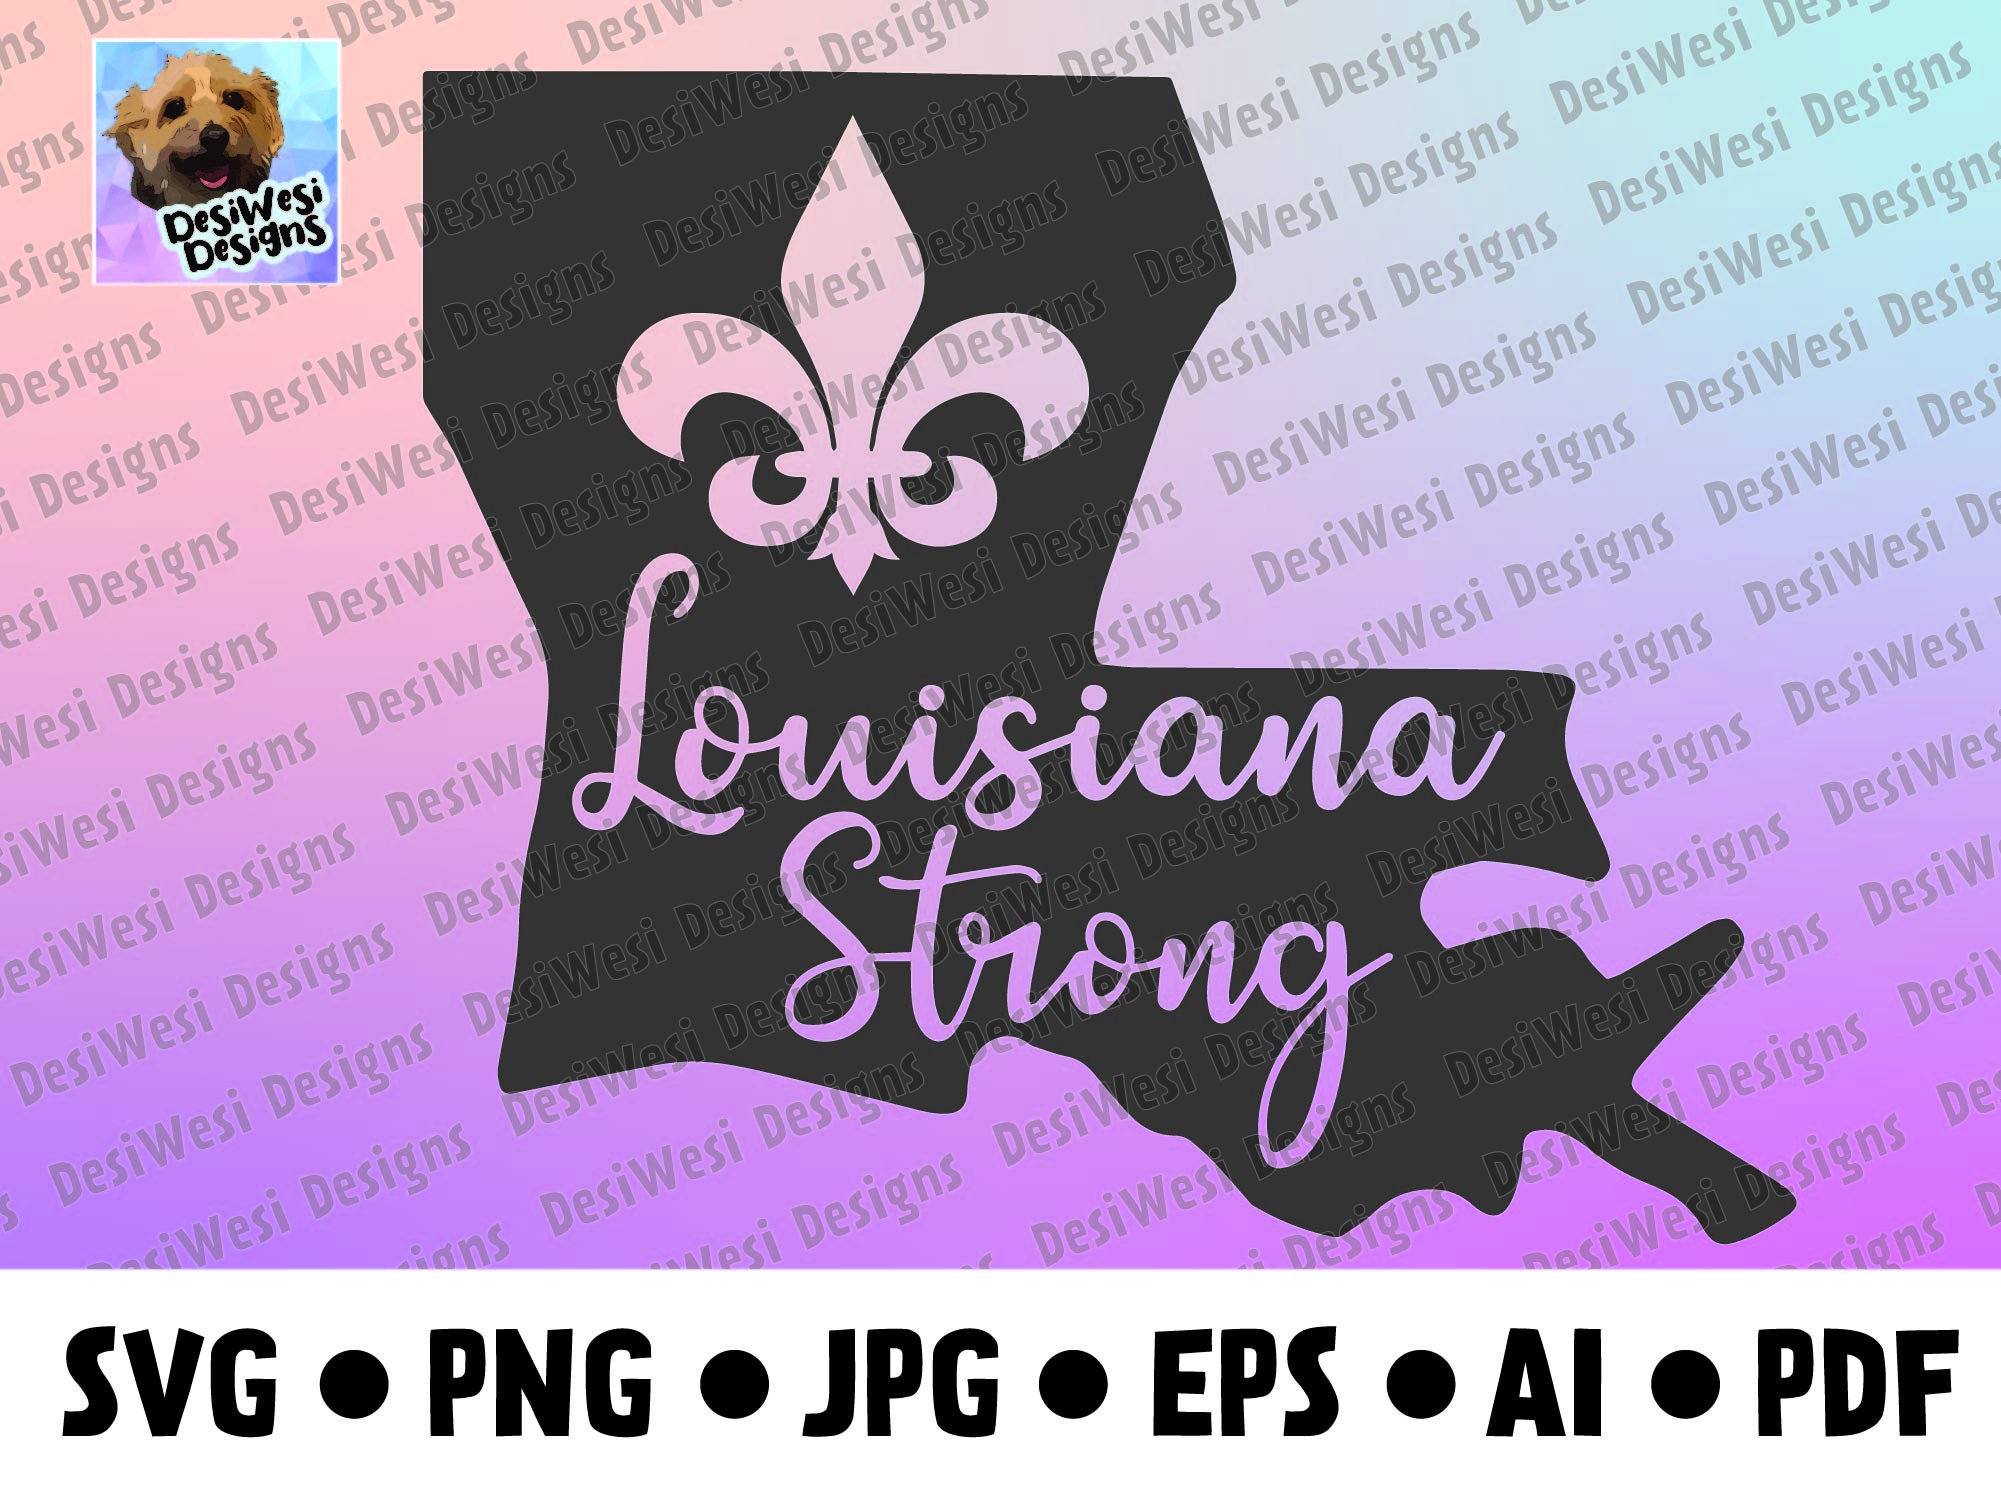 Louisiana Strong Custom Ink Fundraising